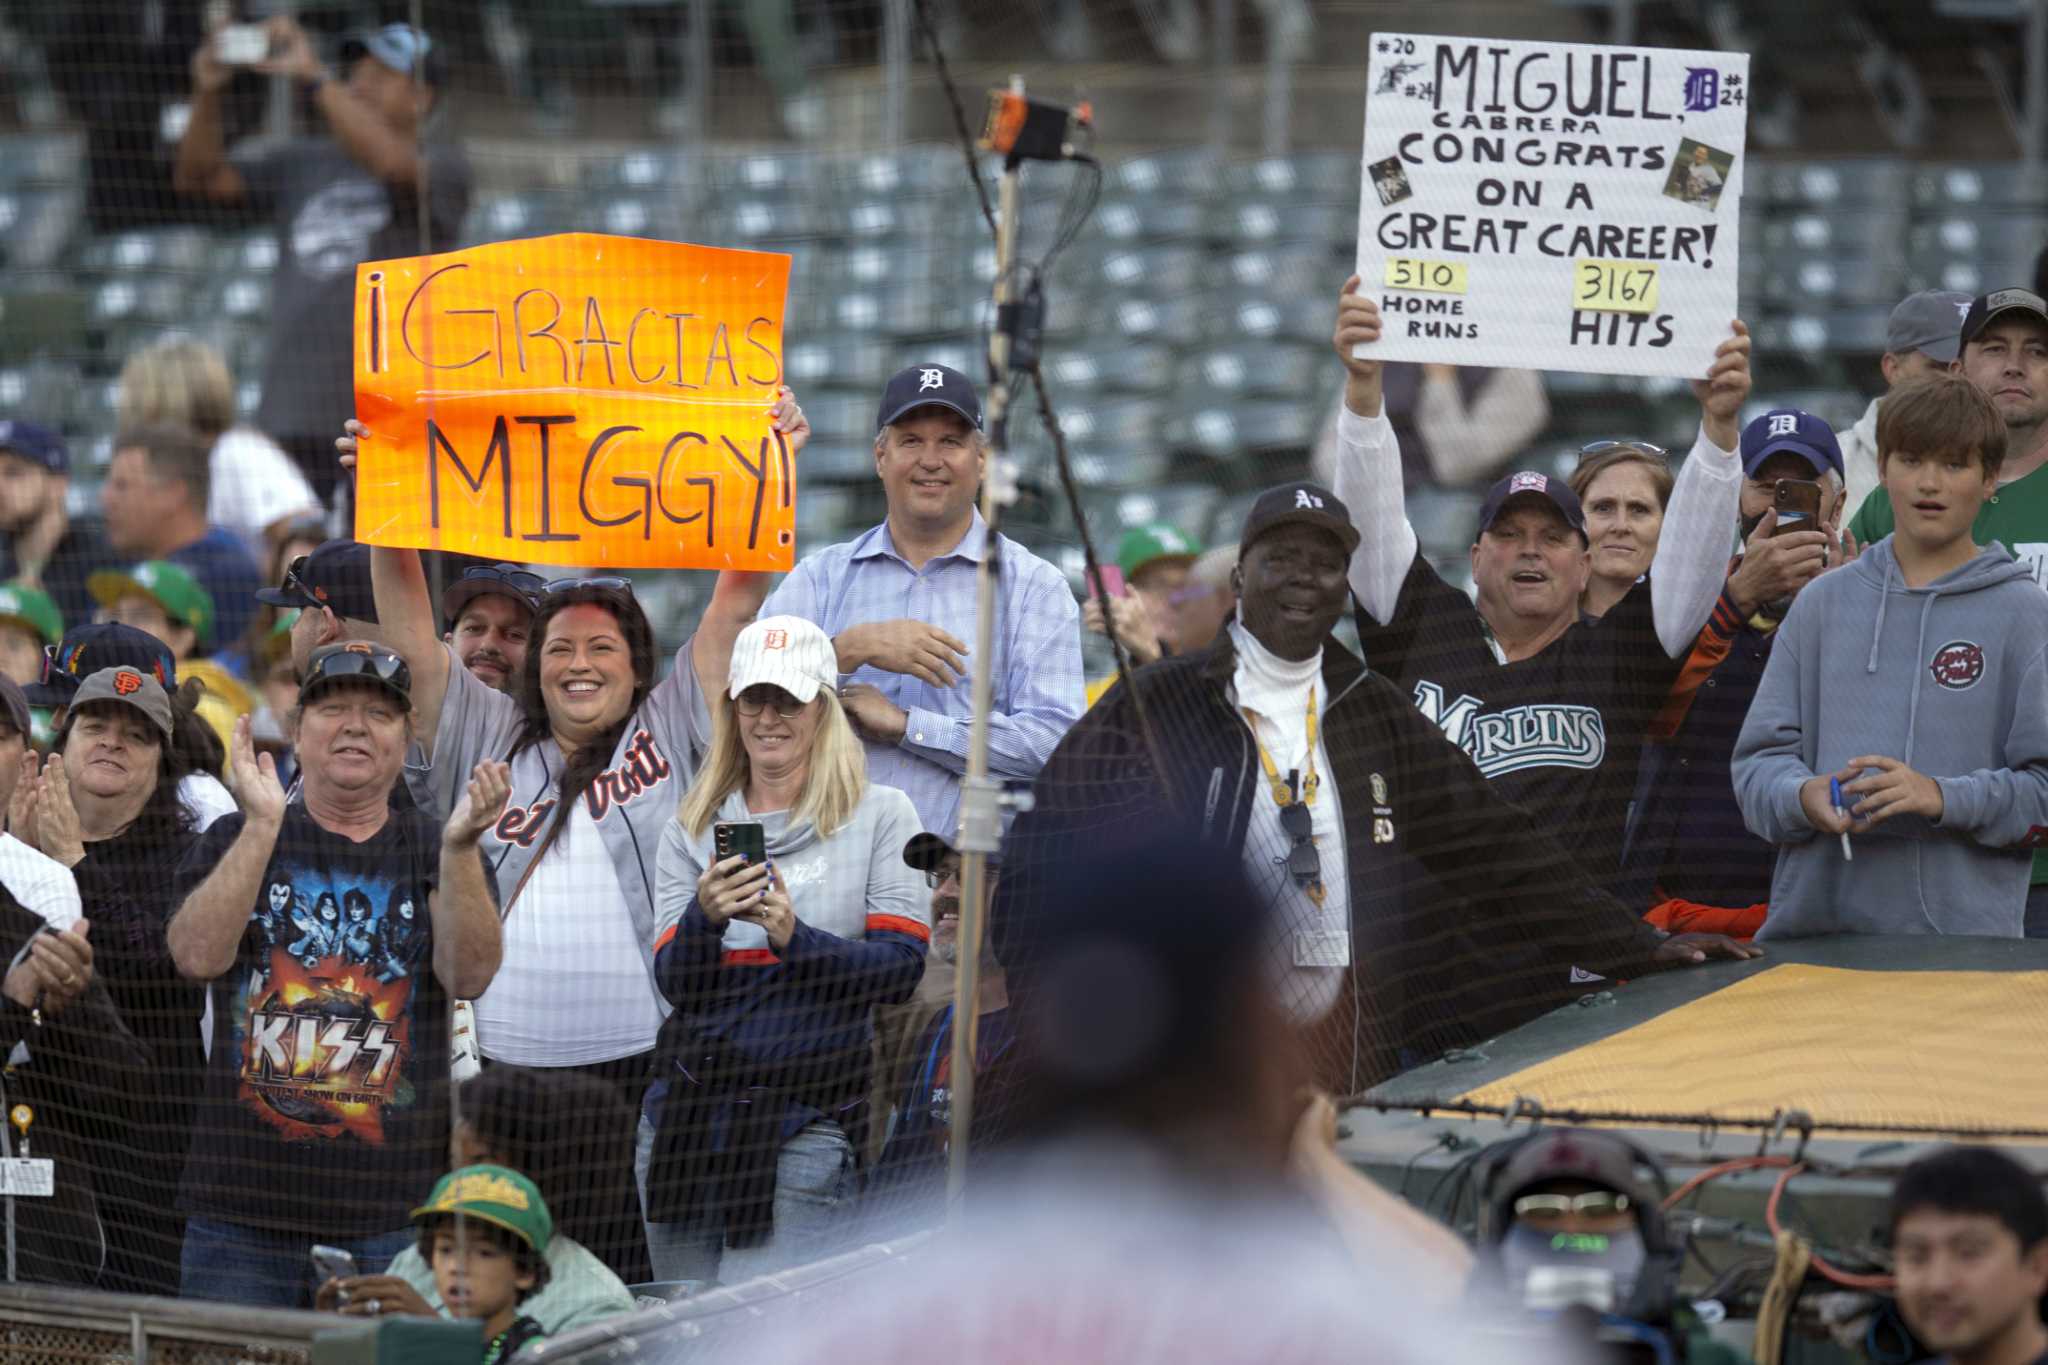 Miggy Falls: Is Miguel Cabrera Actually Declining?